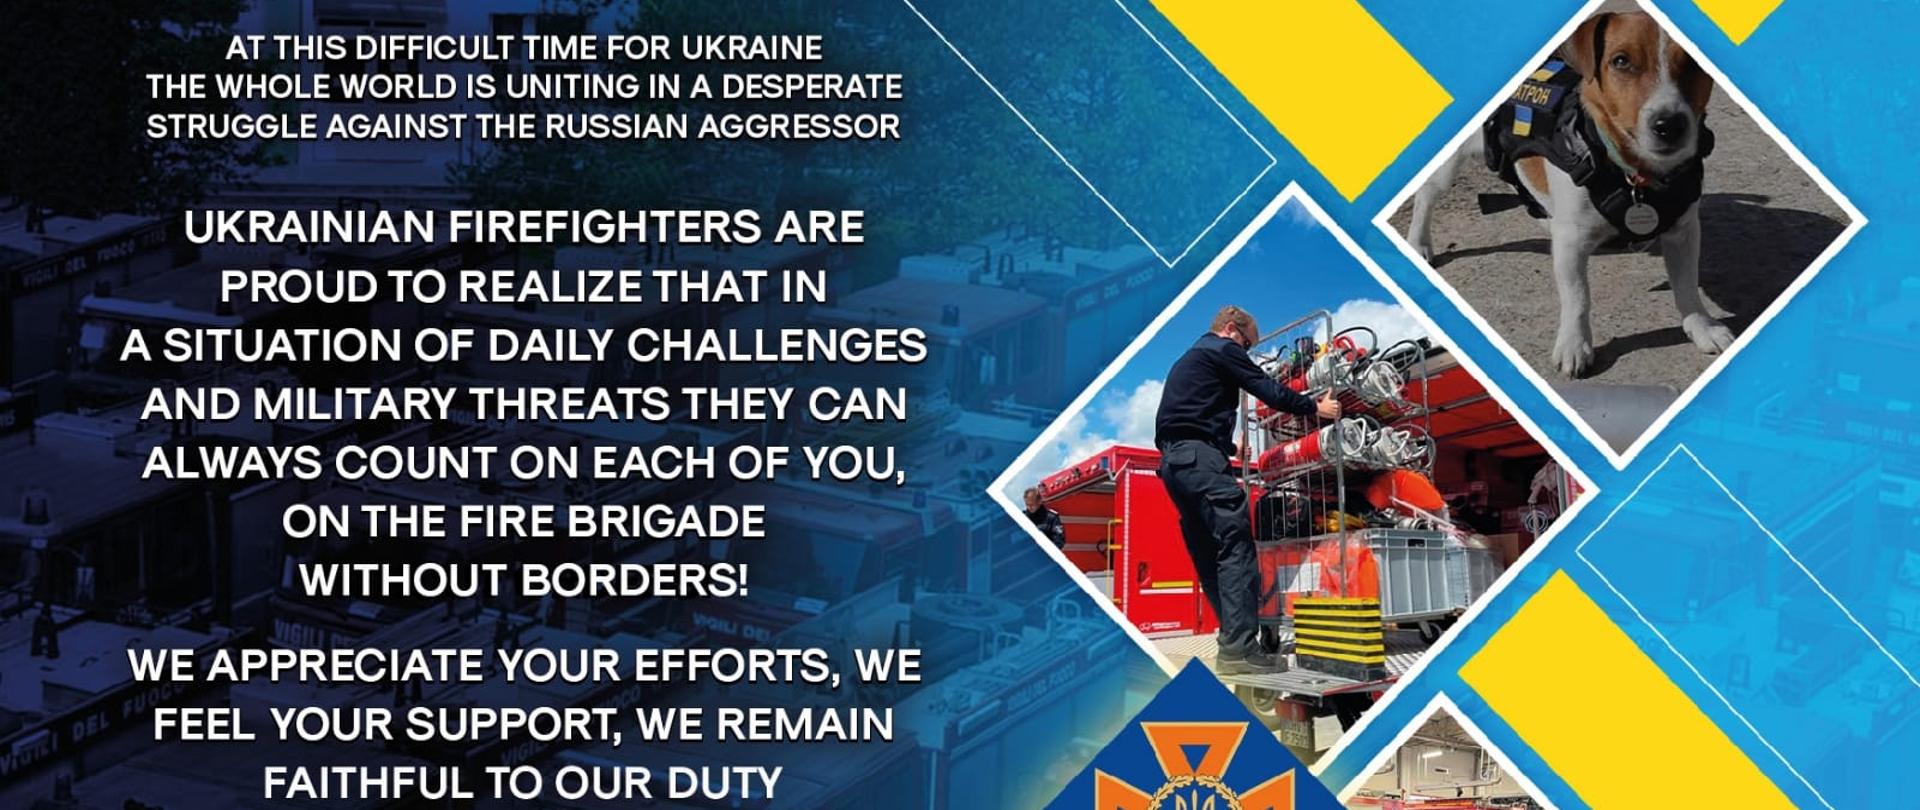 Na zdjęciu widać grafikę w kolorach niebiesko-żółtych z białymi napisami w języku angielskim, wyrażającymi podziękowanie dla Polaków za pomoc i wsparcie w obliczu walki z rosyjskim agresorem